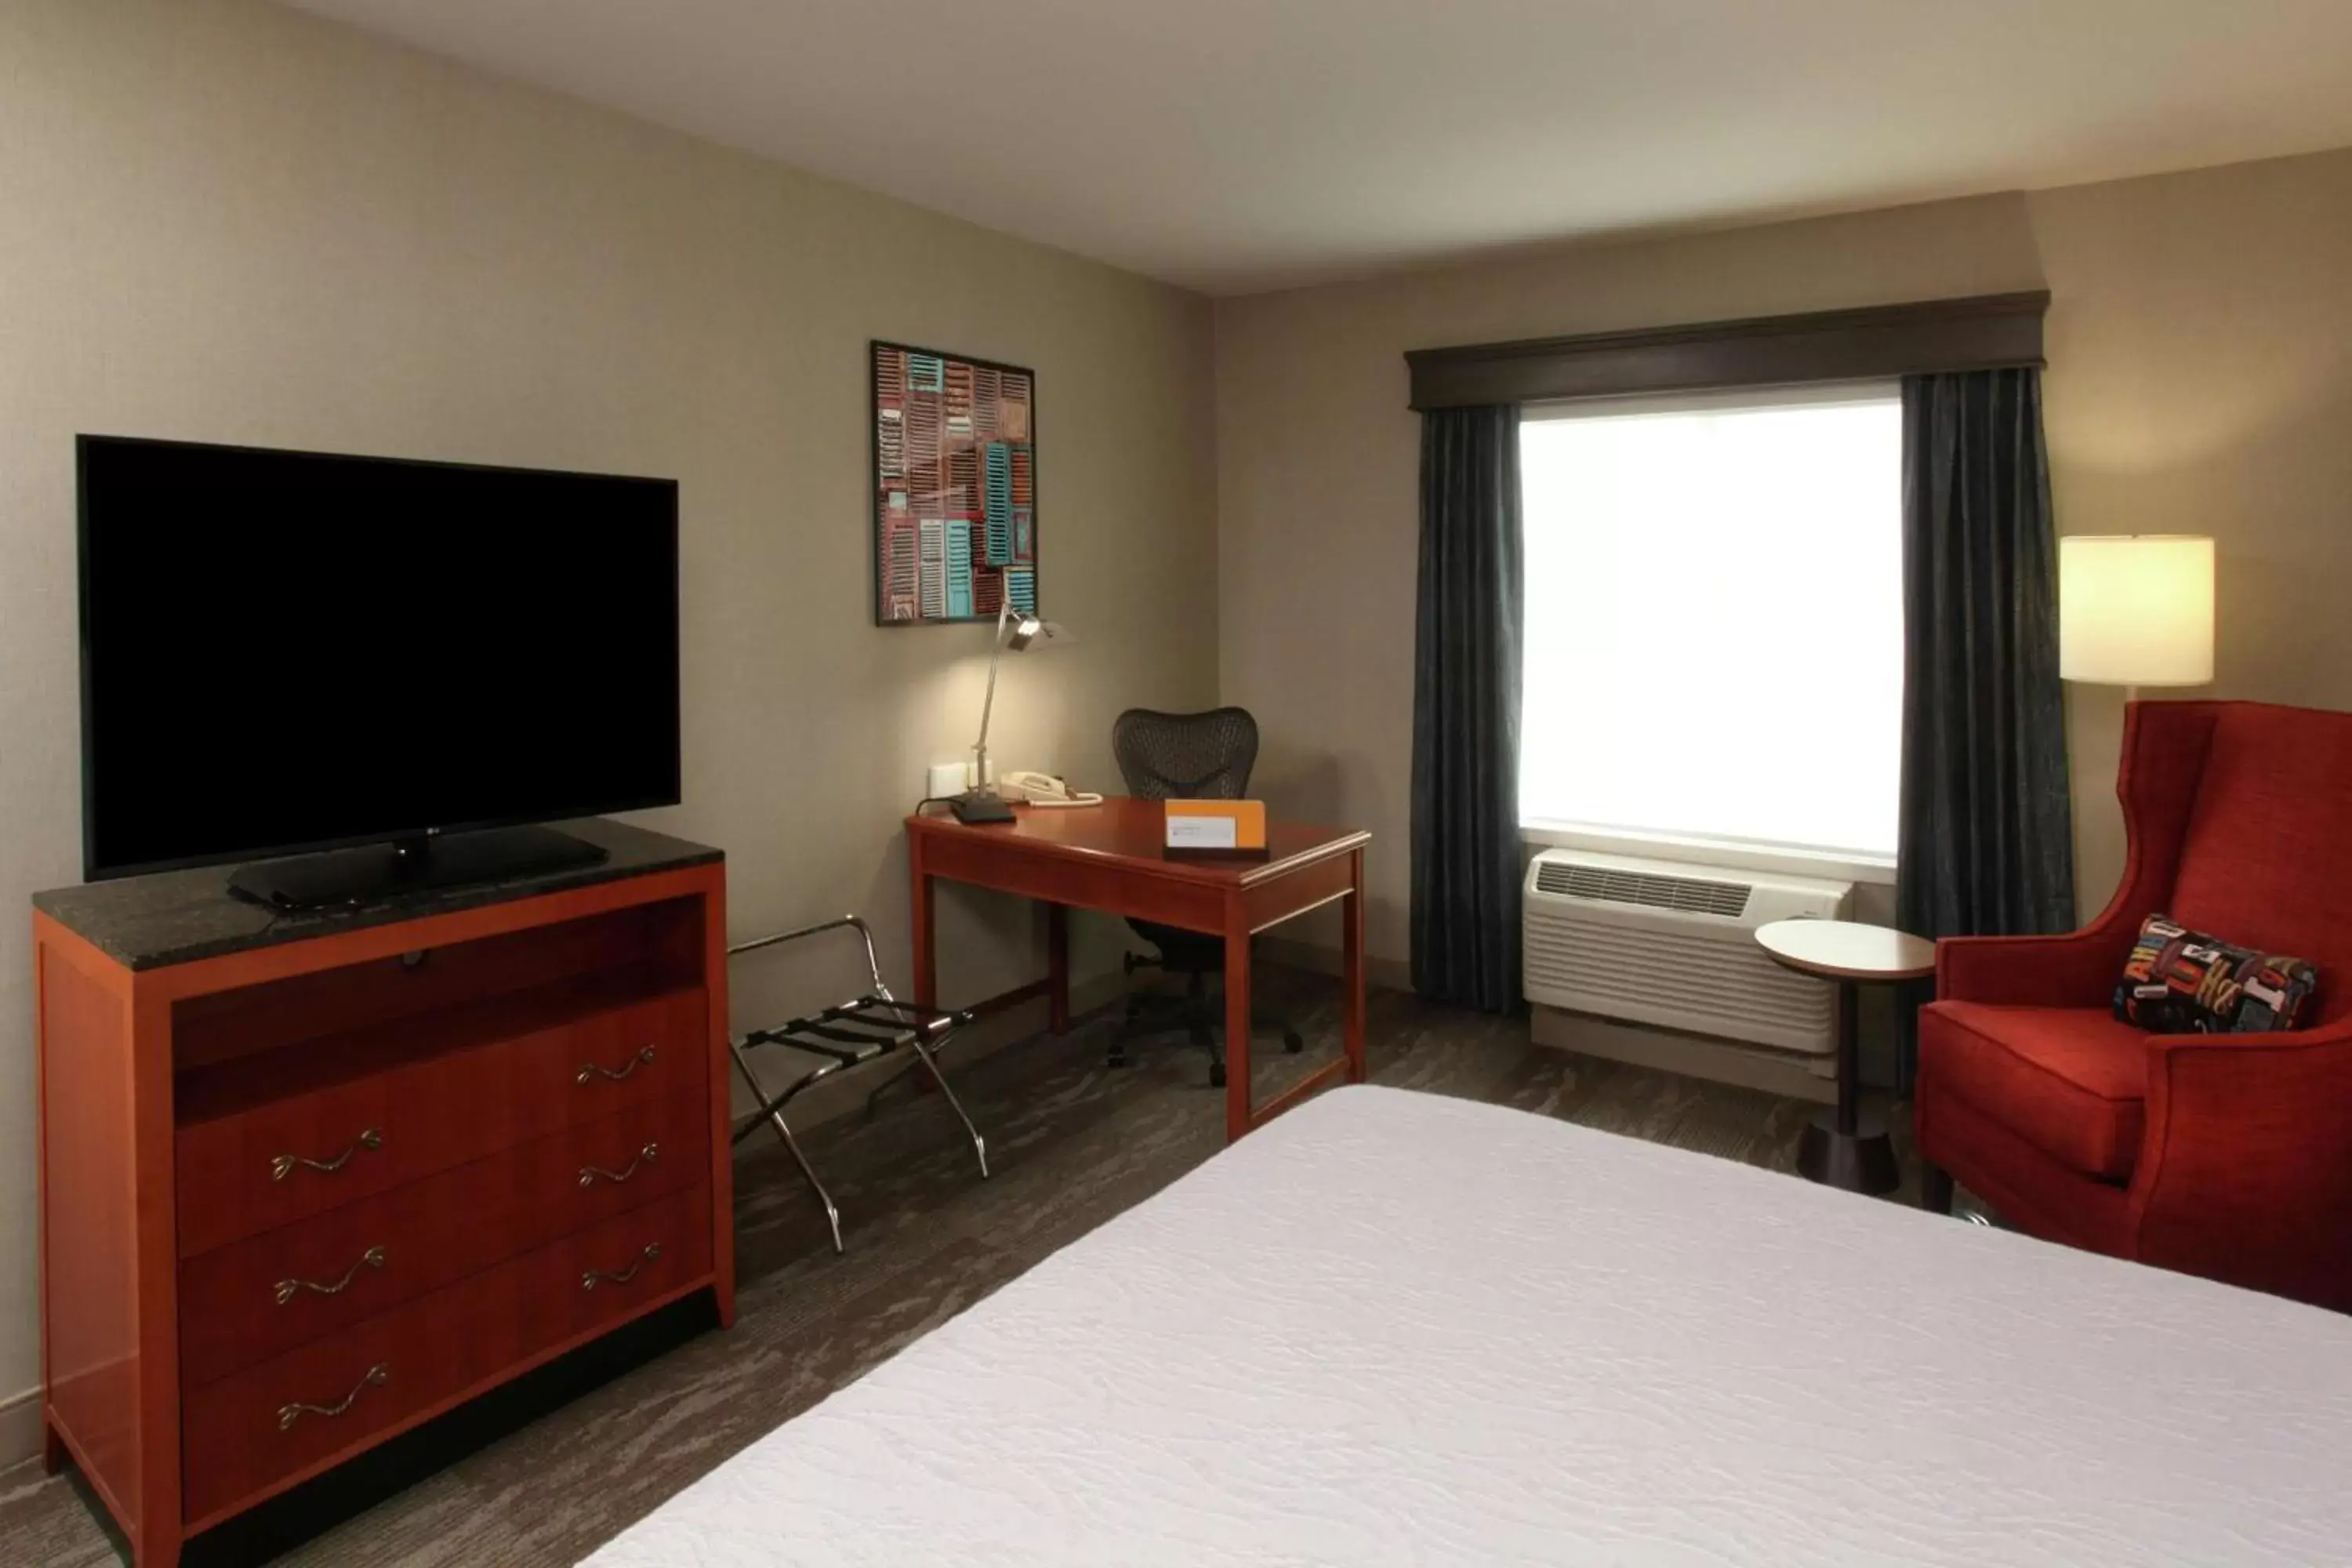 Bedroom, TV/Entertainment Center in Hilton Garden Inn Spokane Airport